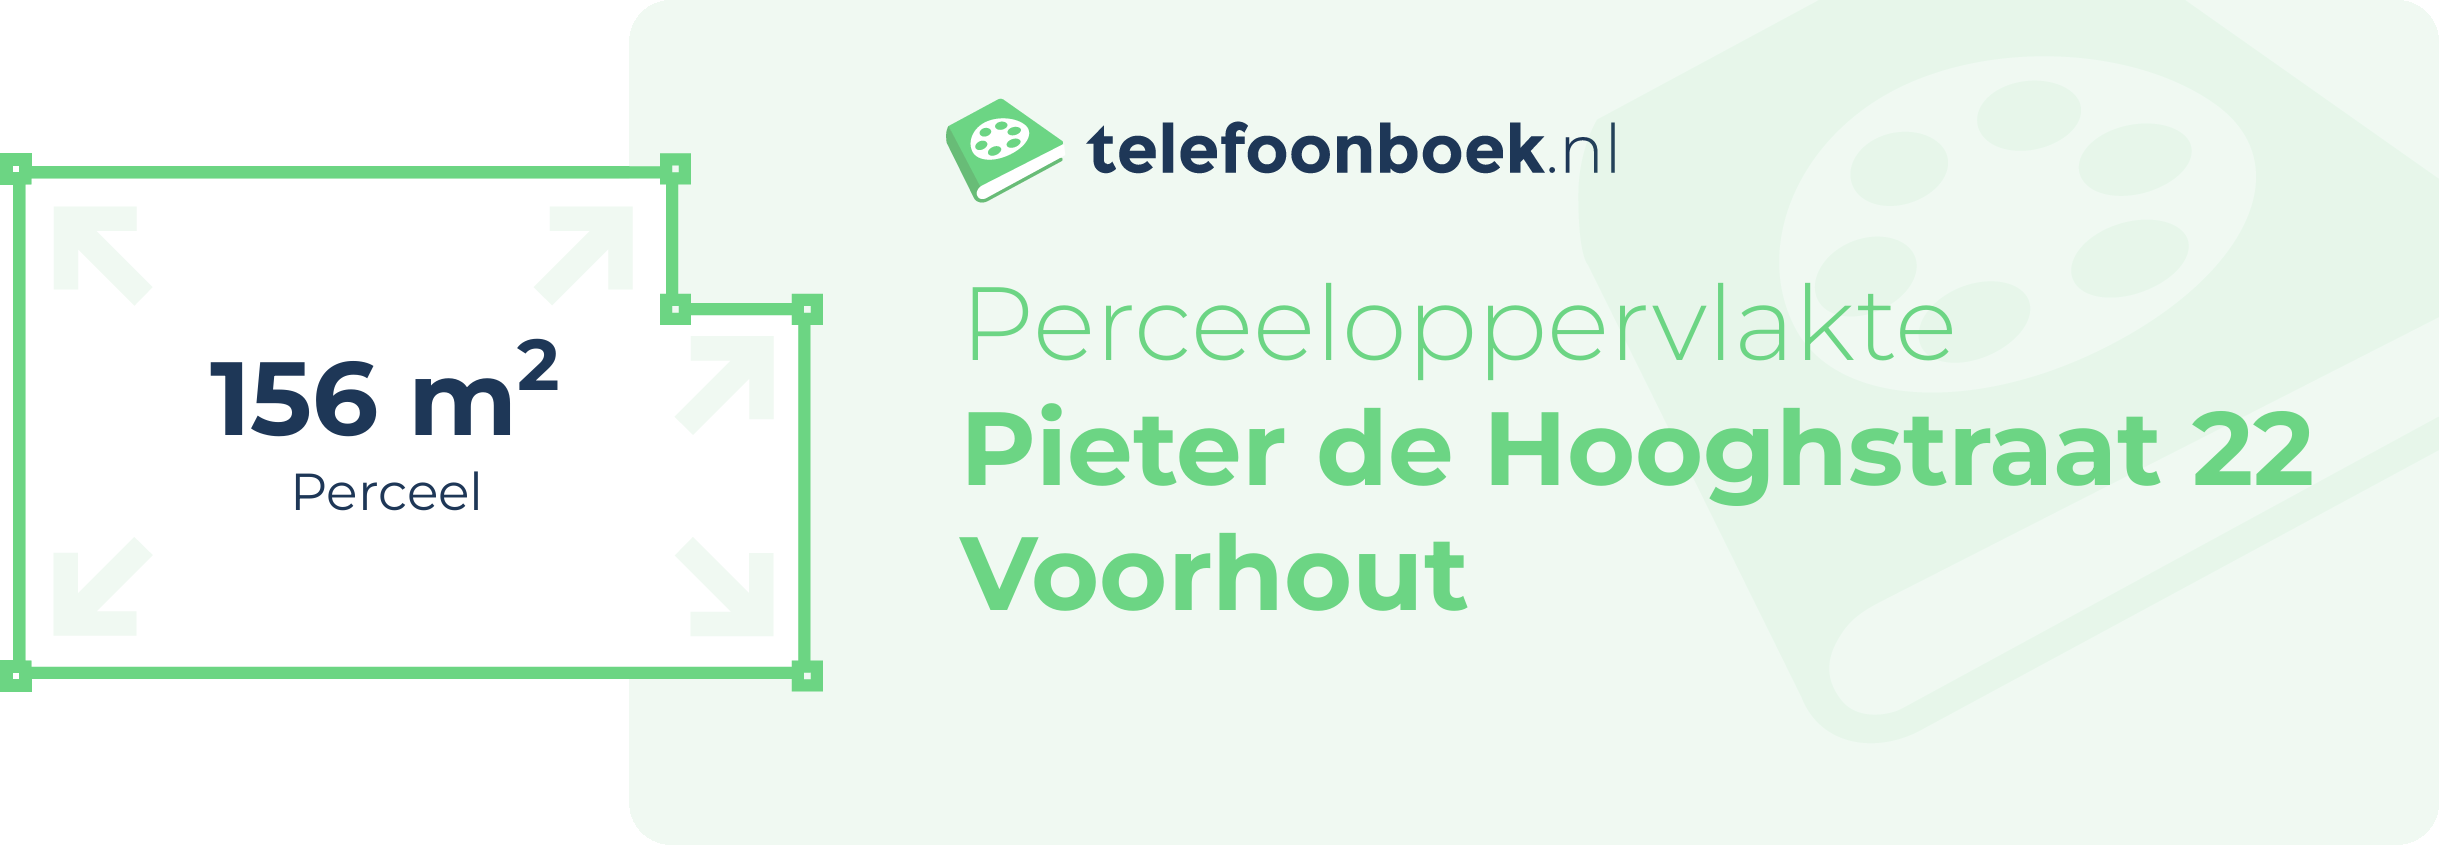 Perceeloppervlakte Pieter De Hooghstraat 22 Voorhout